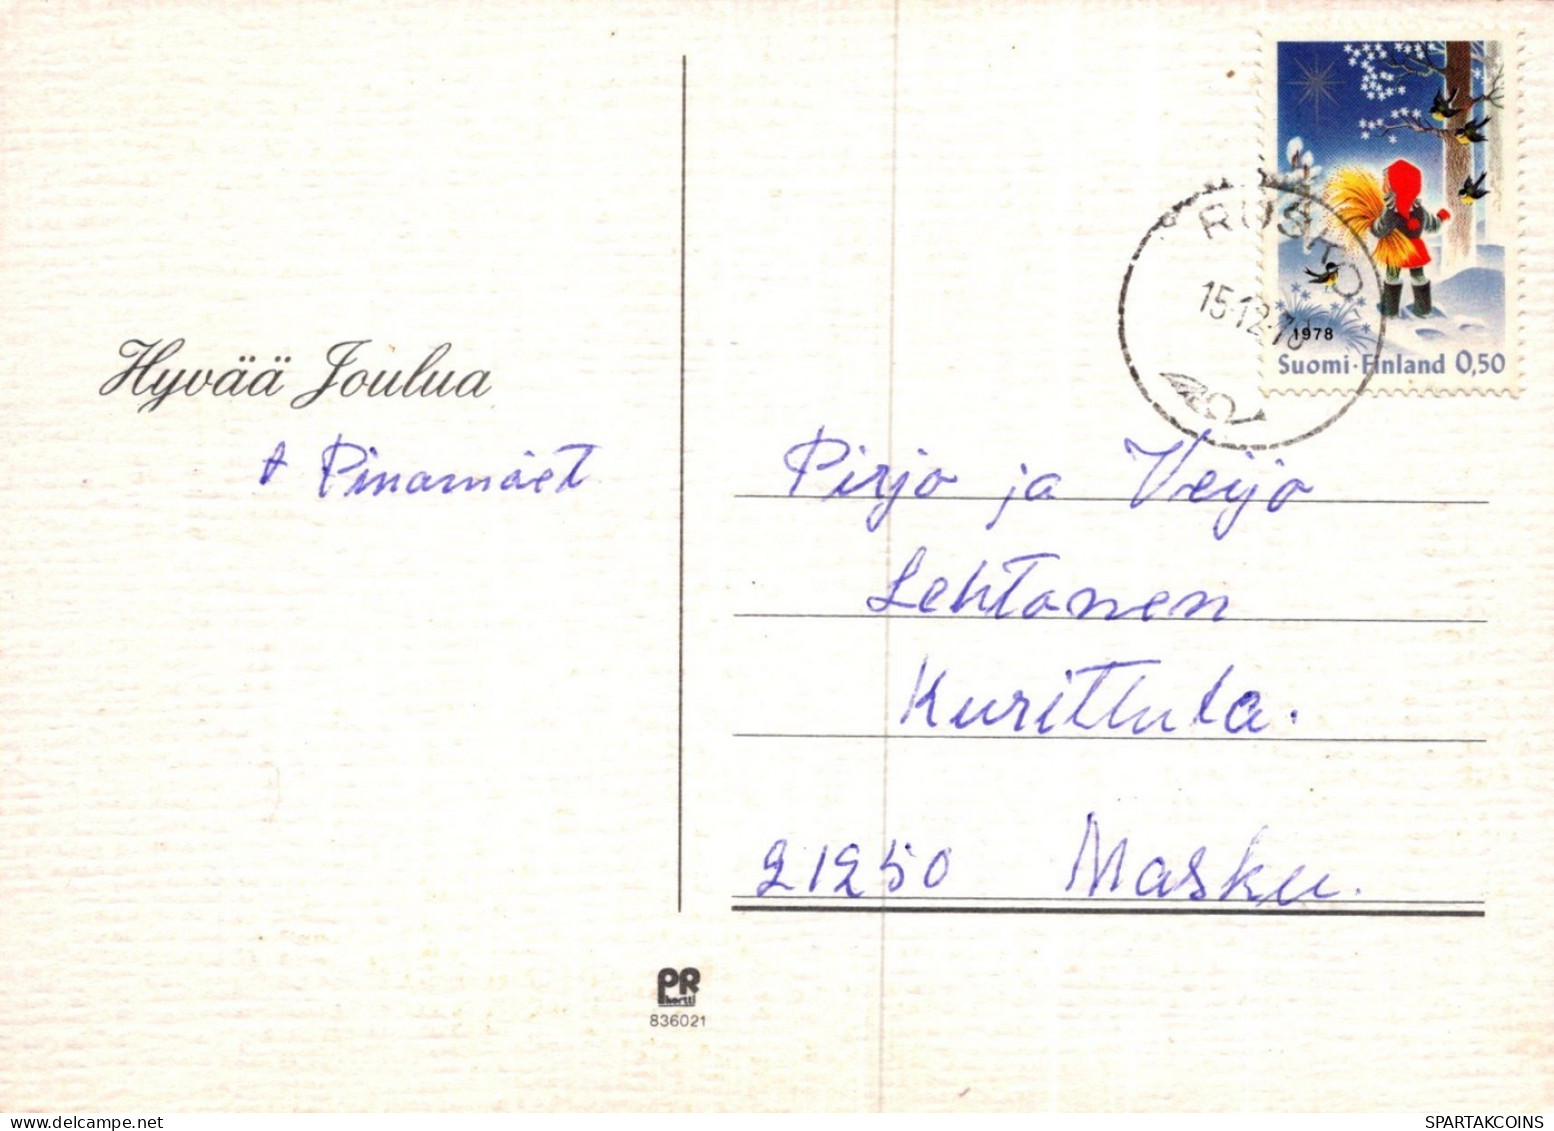 WEIHNACHTSMANN SANTA CLAUS WEIHNACHTSFERIEN Vintage Postkarte CPSM #PAK802.DE - Santa Claus